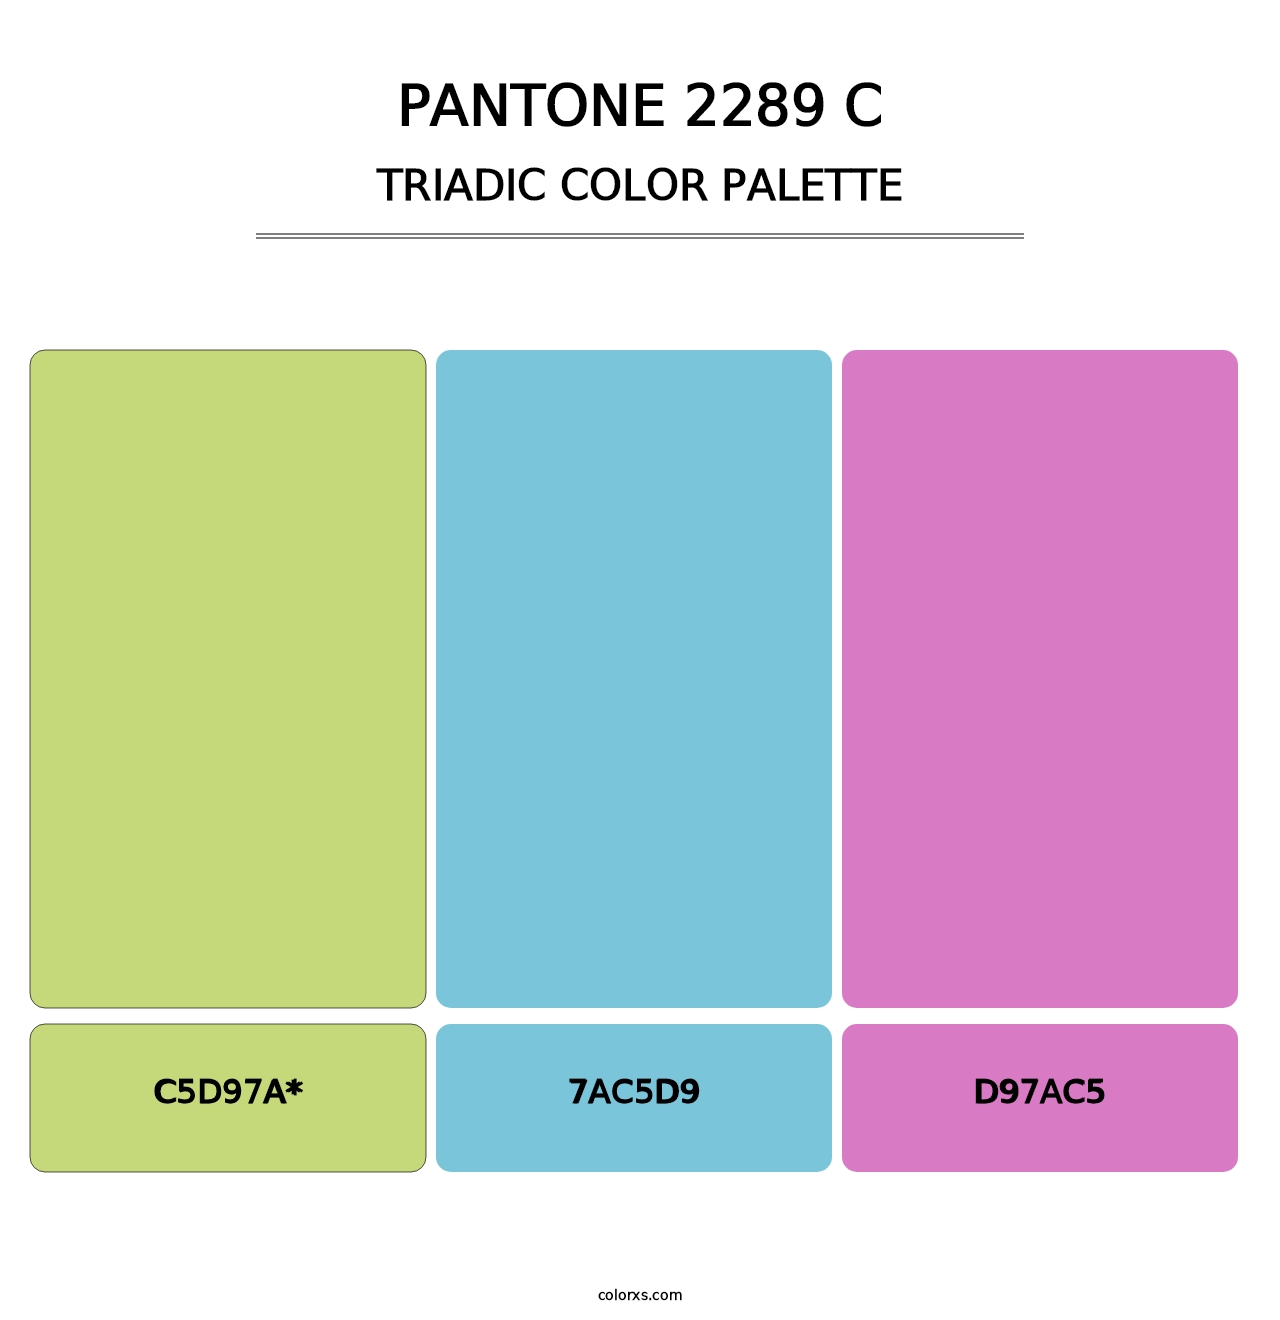 PANTONE 2289 C - Triadic Color Palette